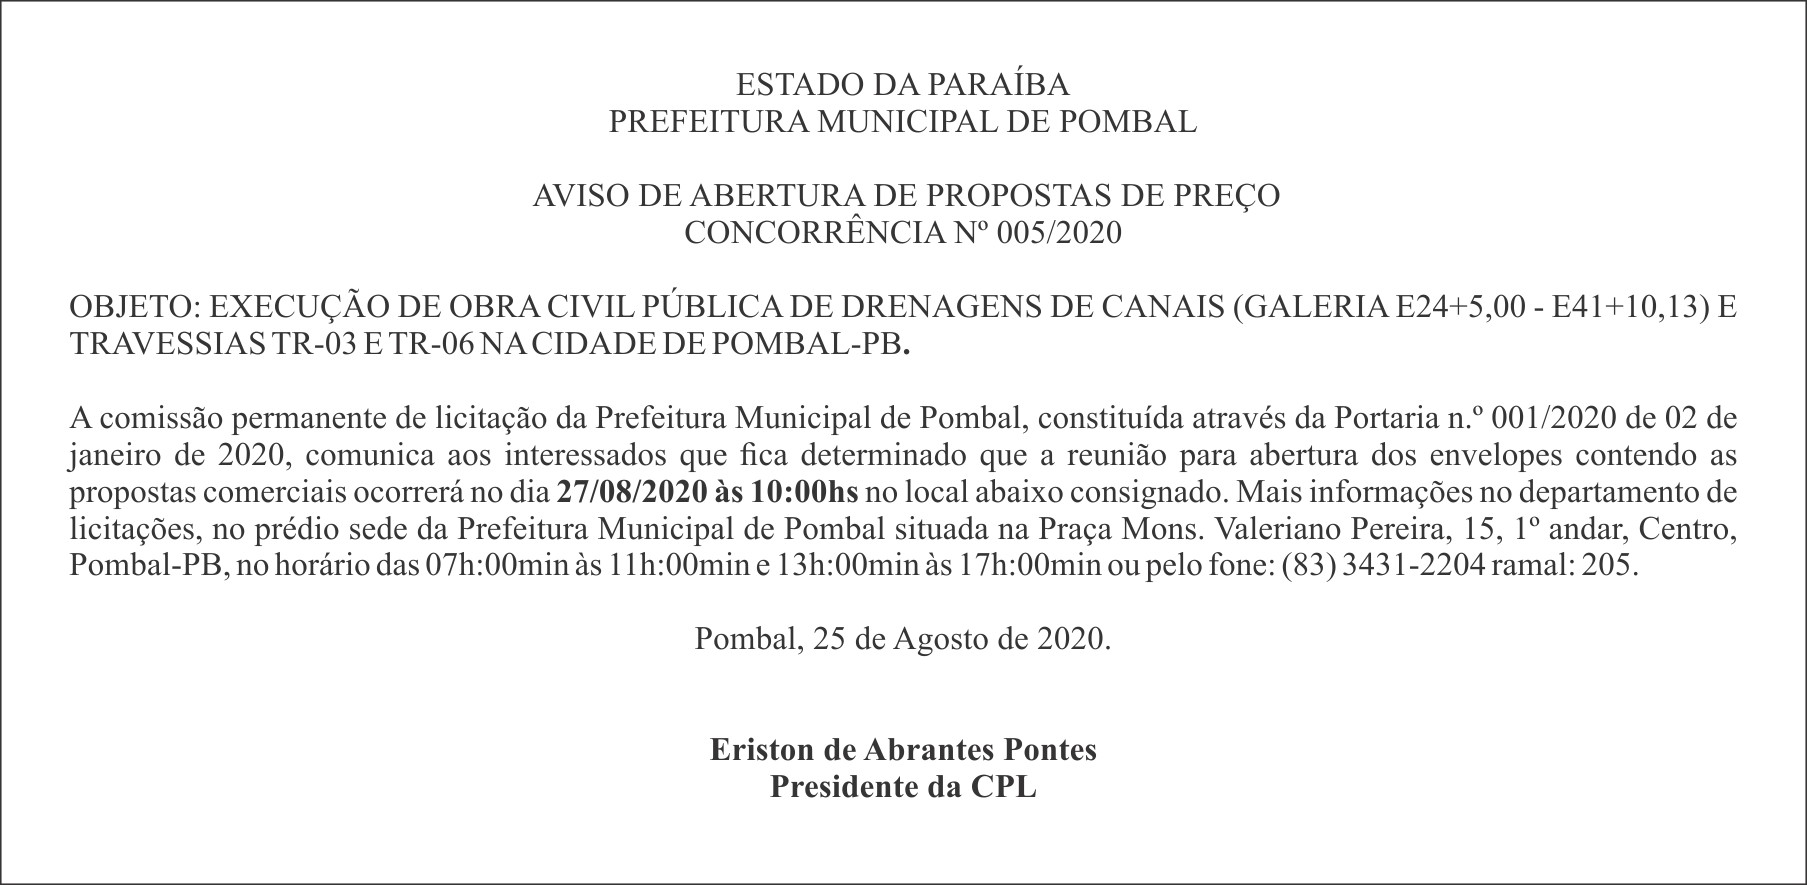 PREFEITURA MUNICIPAL DE POMBAL – AVISO DE ABERTURA DE PROPOSTAS DE PREÇO – CONCORRÊNCIA Nº 005/2020